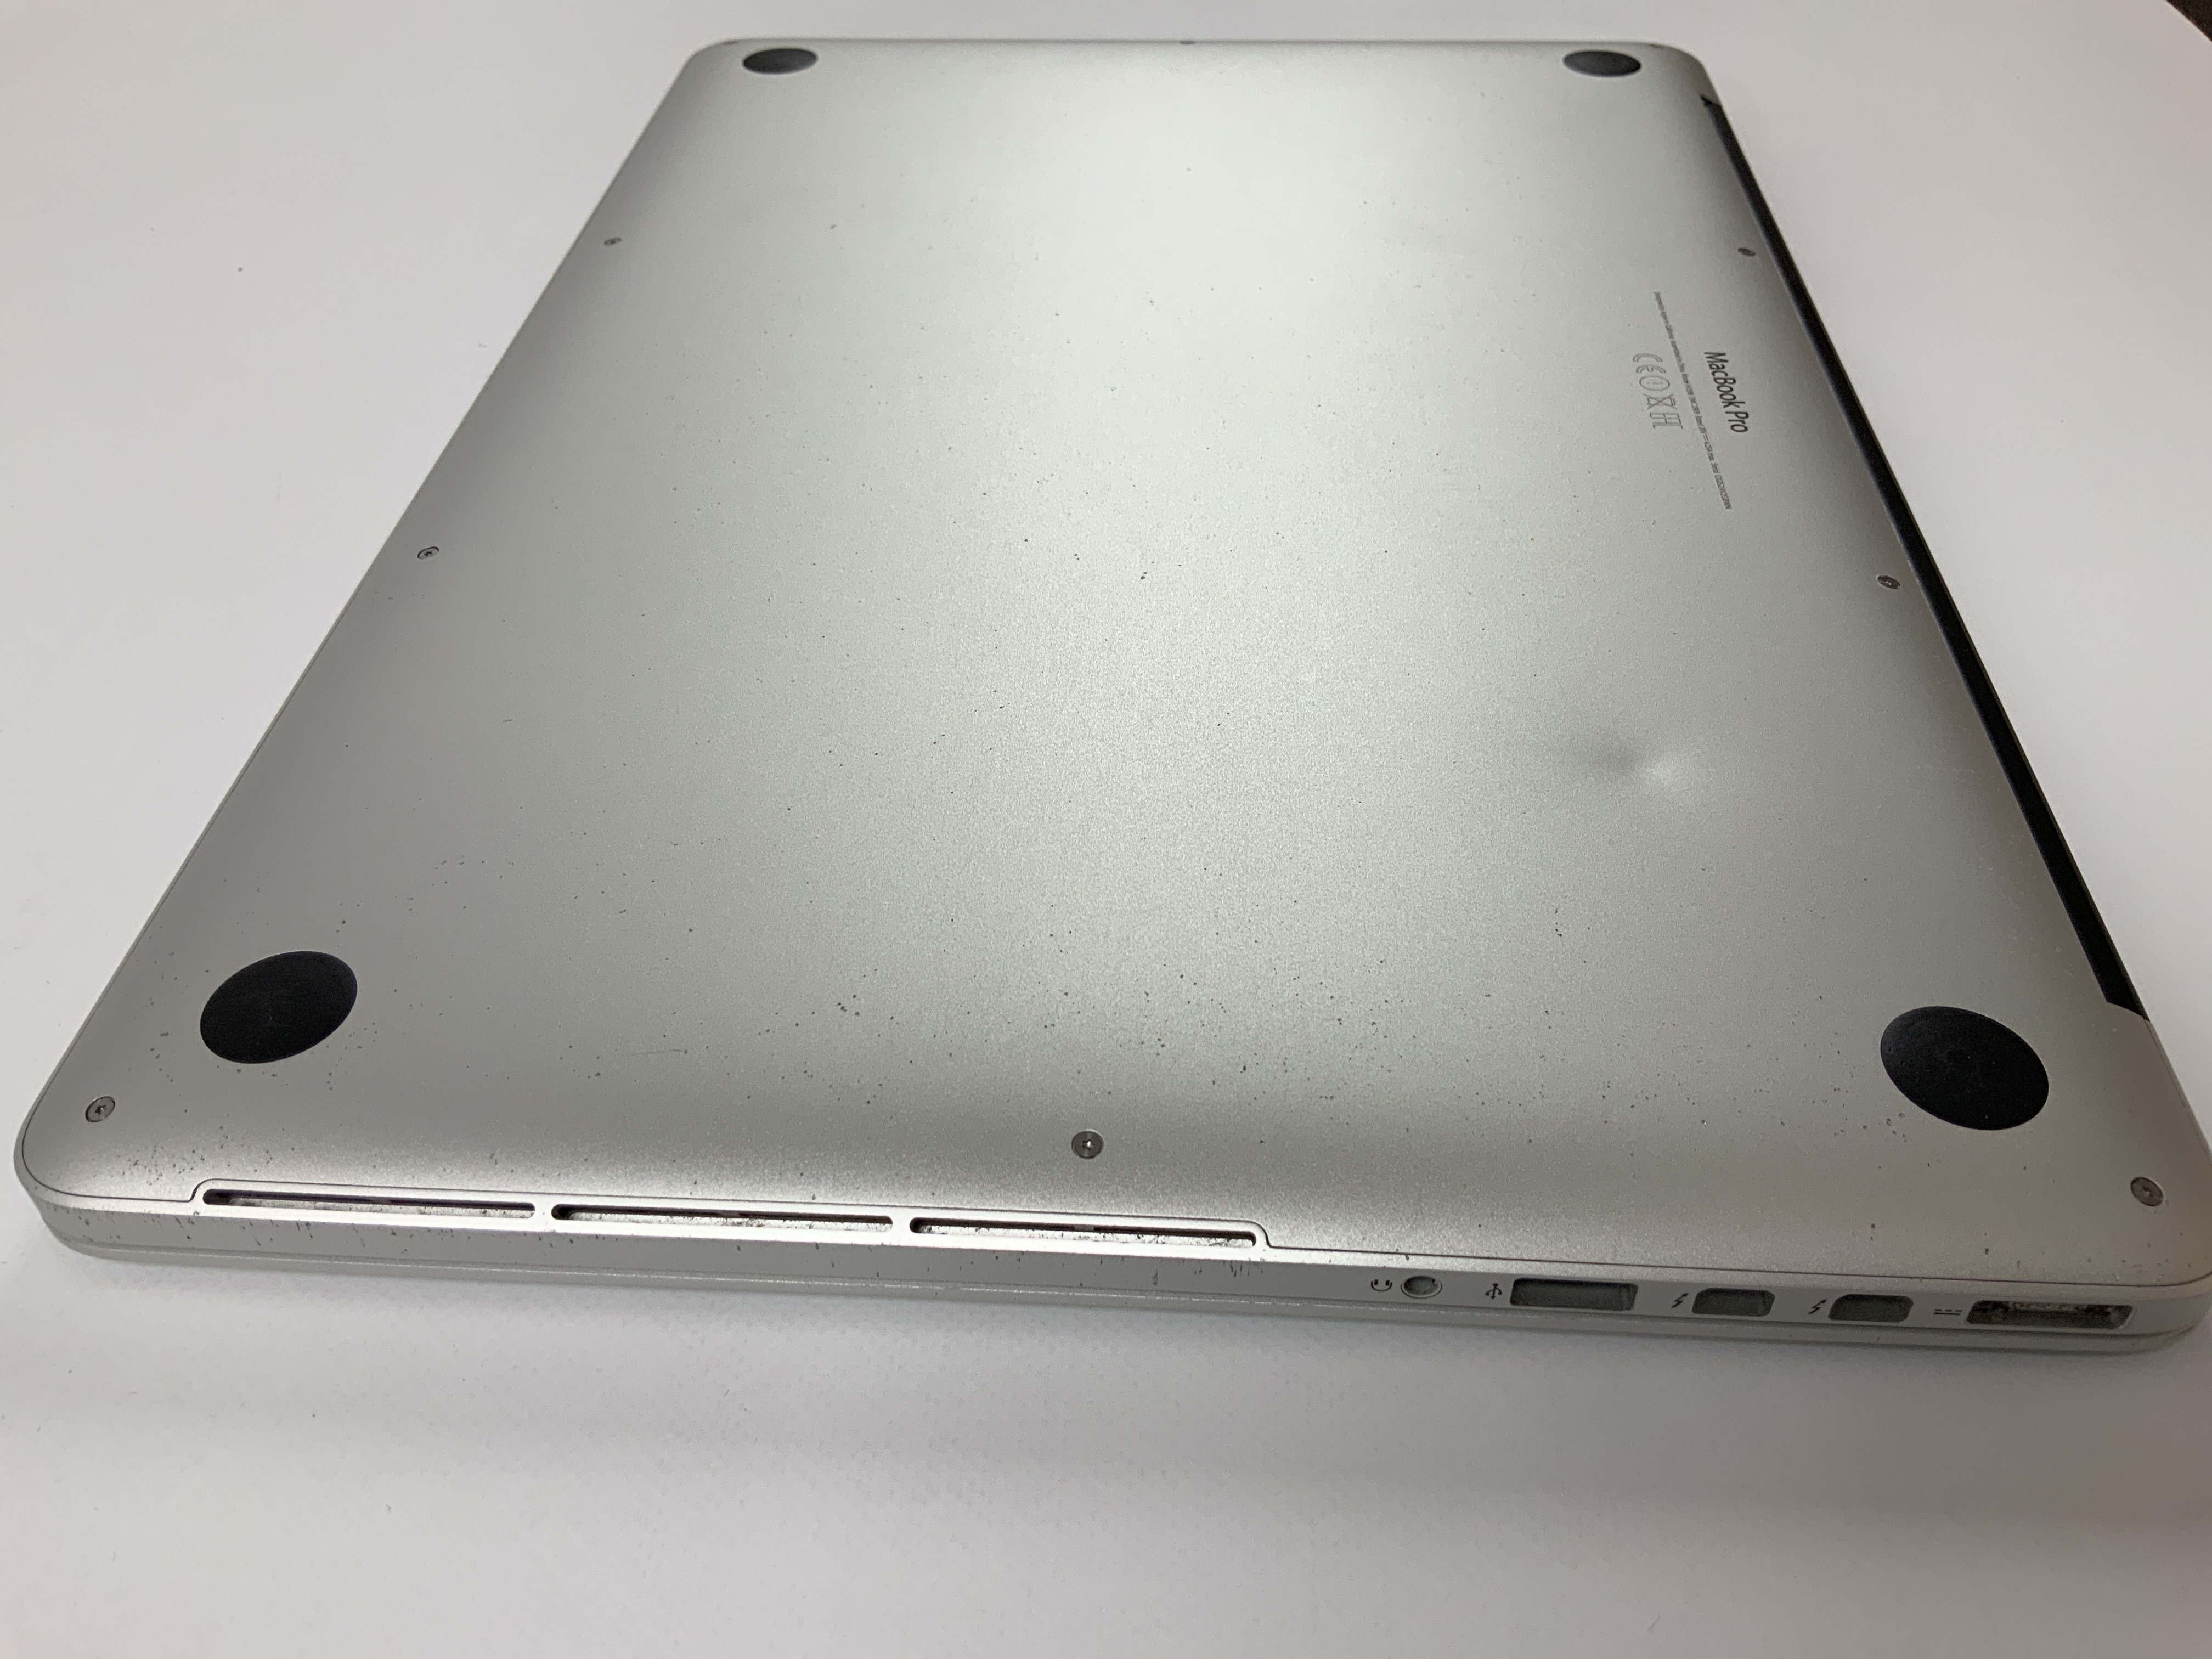 MacBook Pro Retina 15" Mid 2015 (Intel Quad-Core i7 2.5 GHz 16 GB RAM 256 GB SSD), Intel Quad-Core i7 2.5 GHz, 16 GB RAM, 256 GB SSD, obraz 5